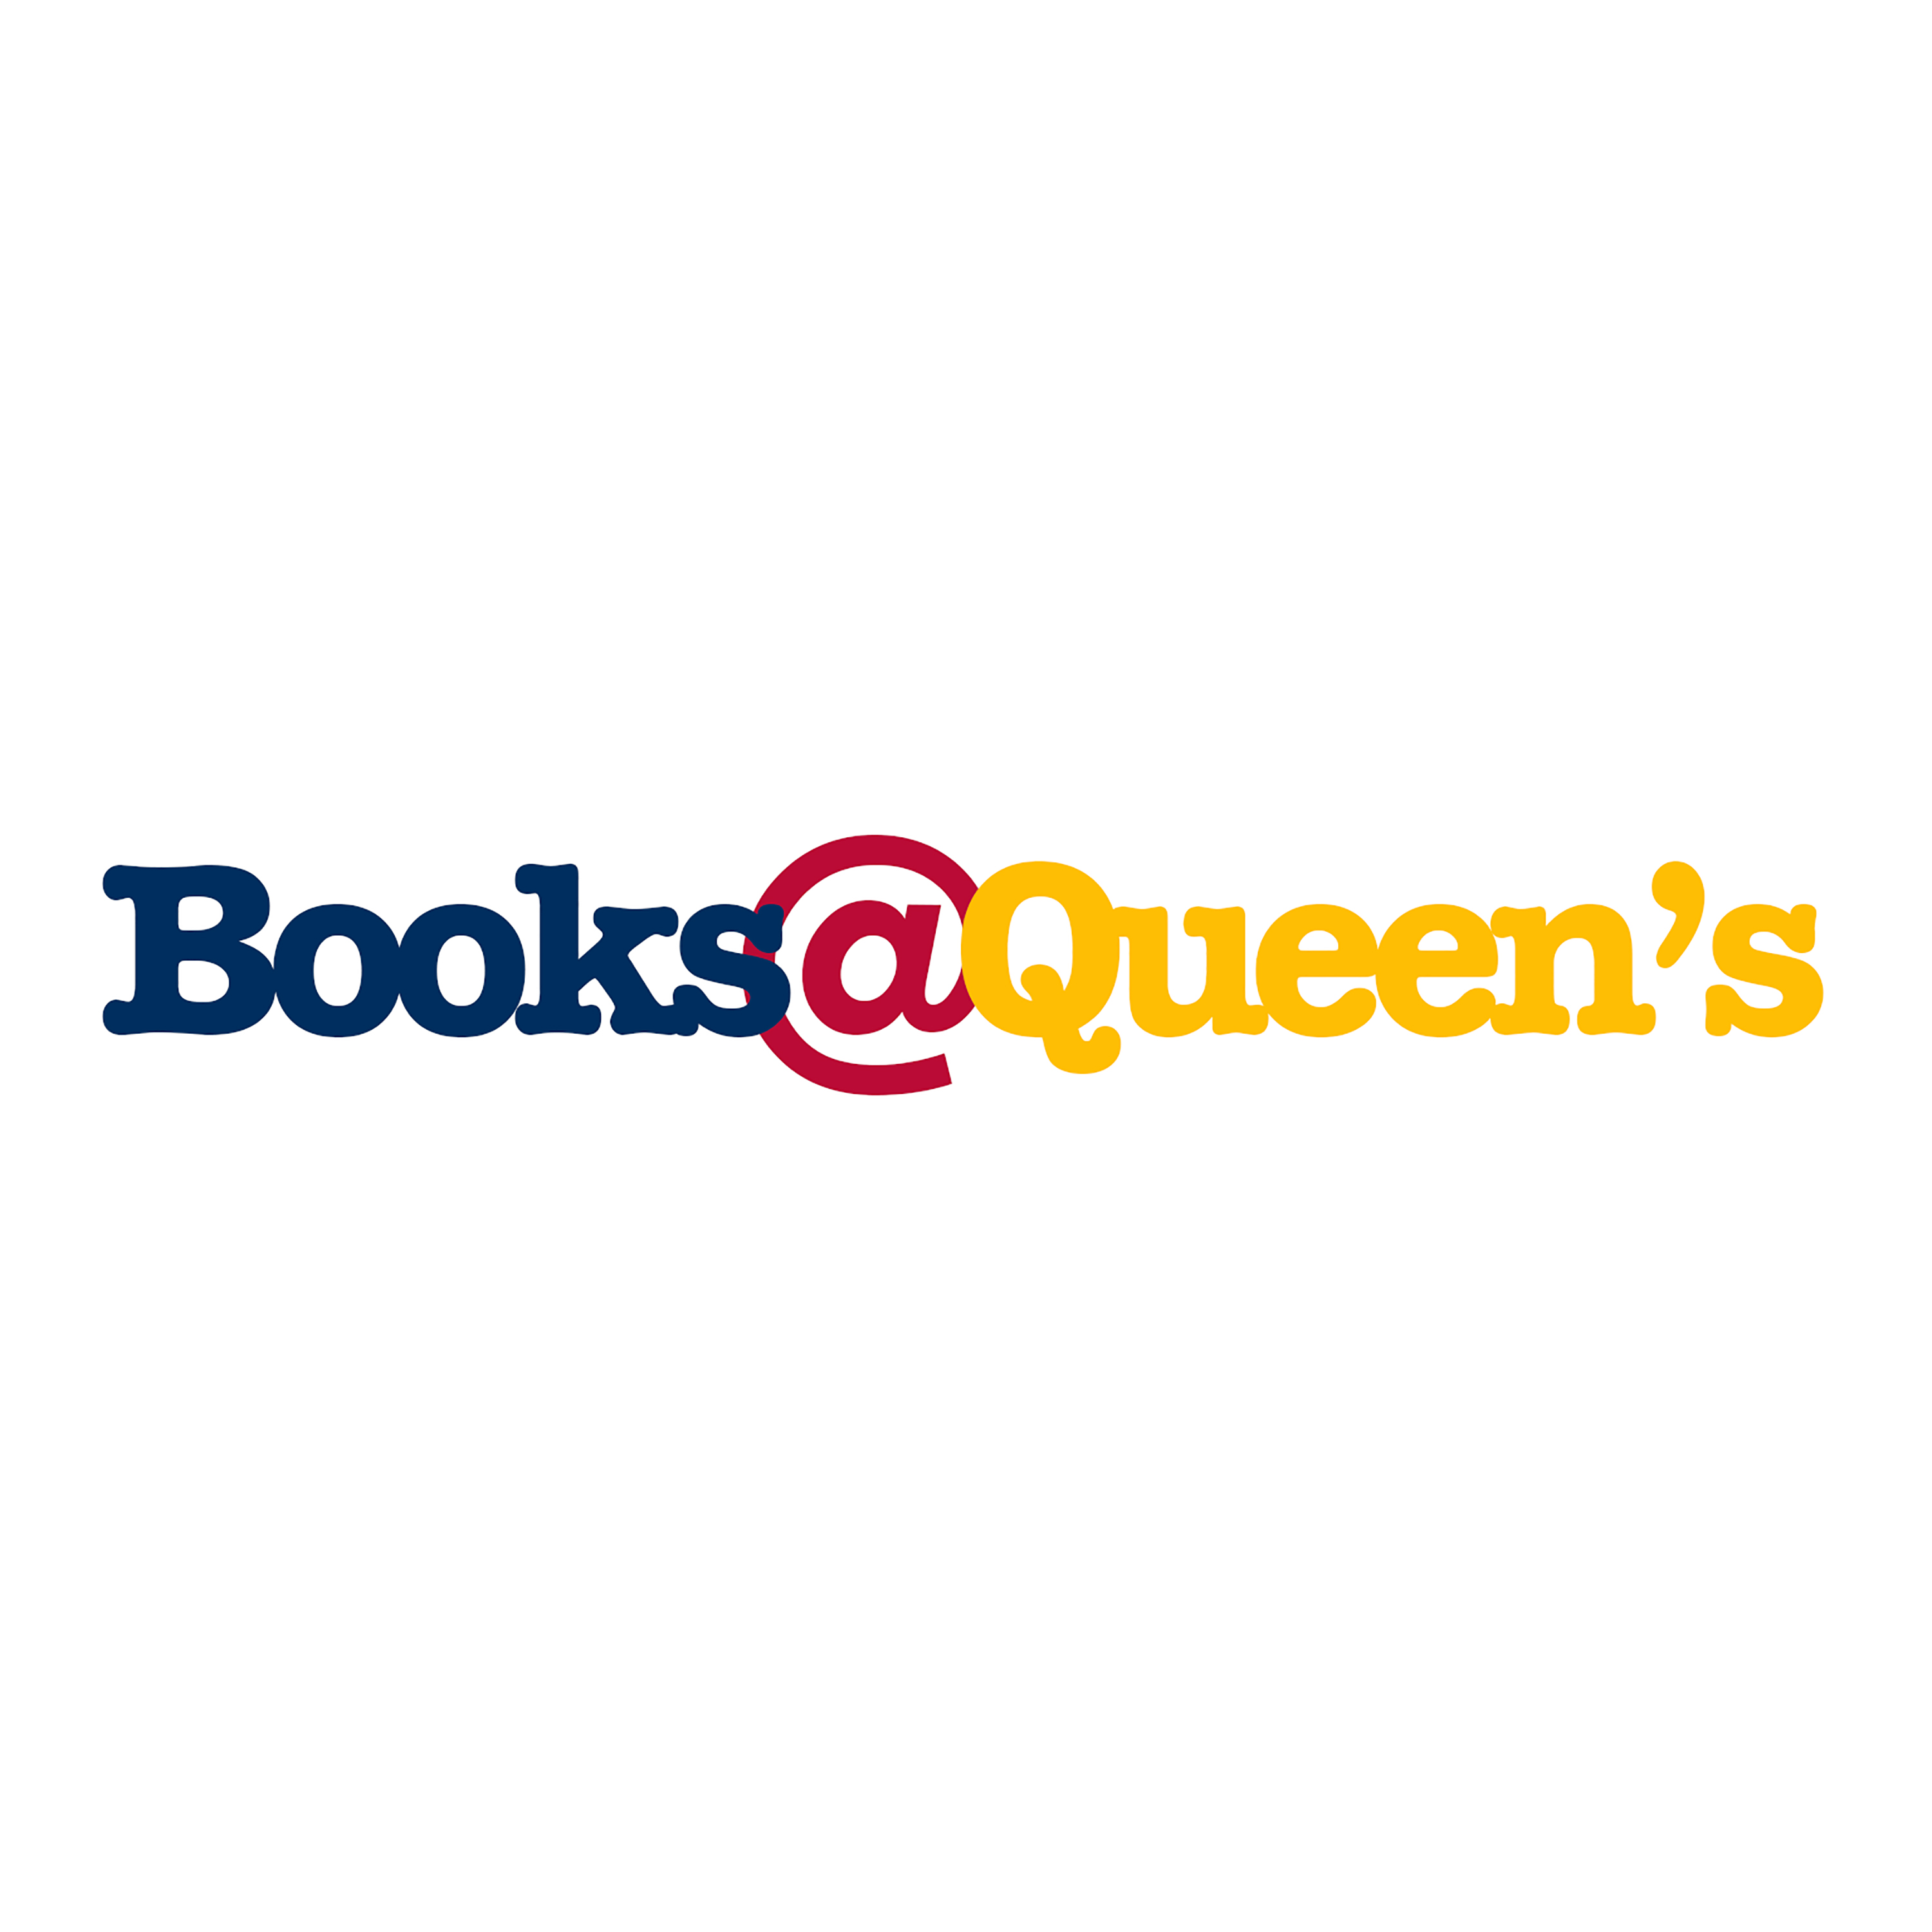 Books@Queen’s: Elizabeth Hanson